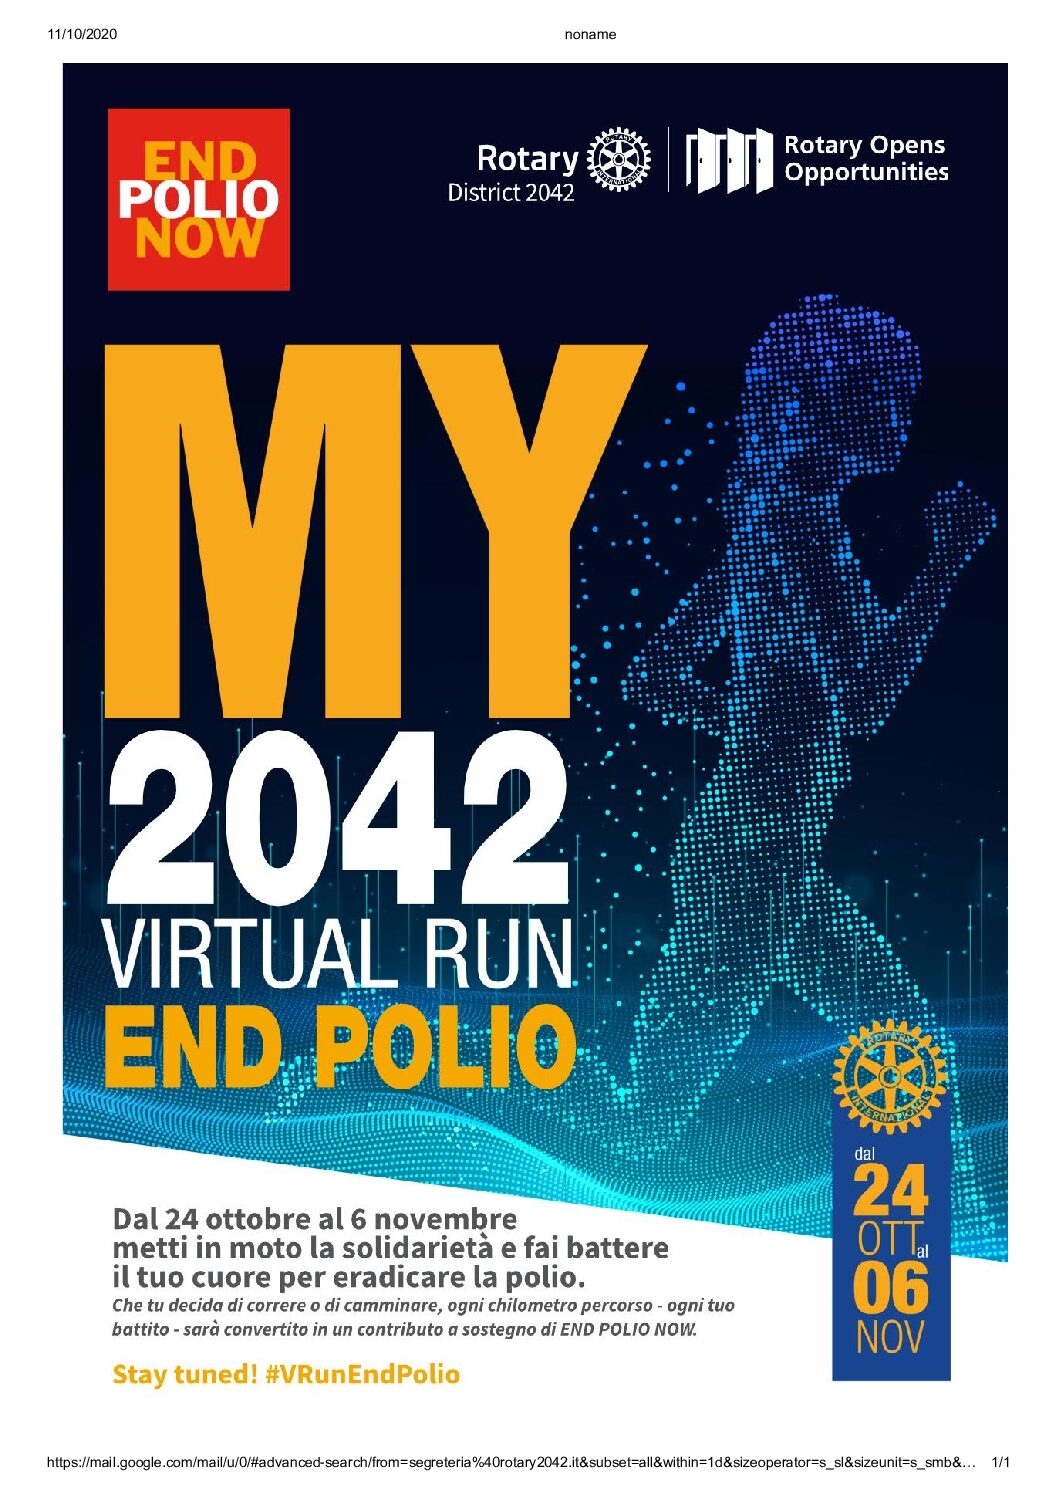 Rotarian Virtual Run